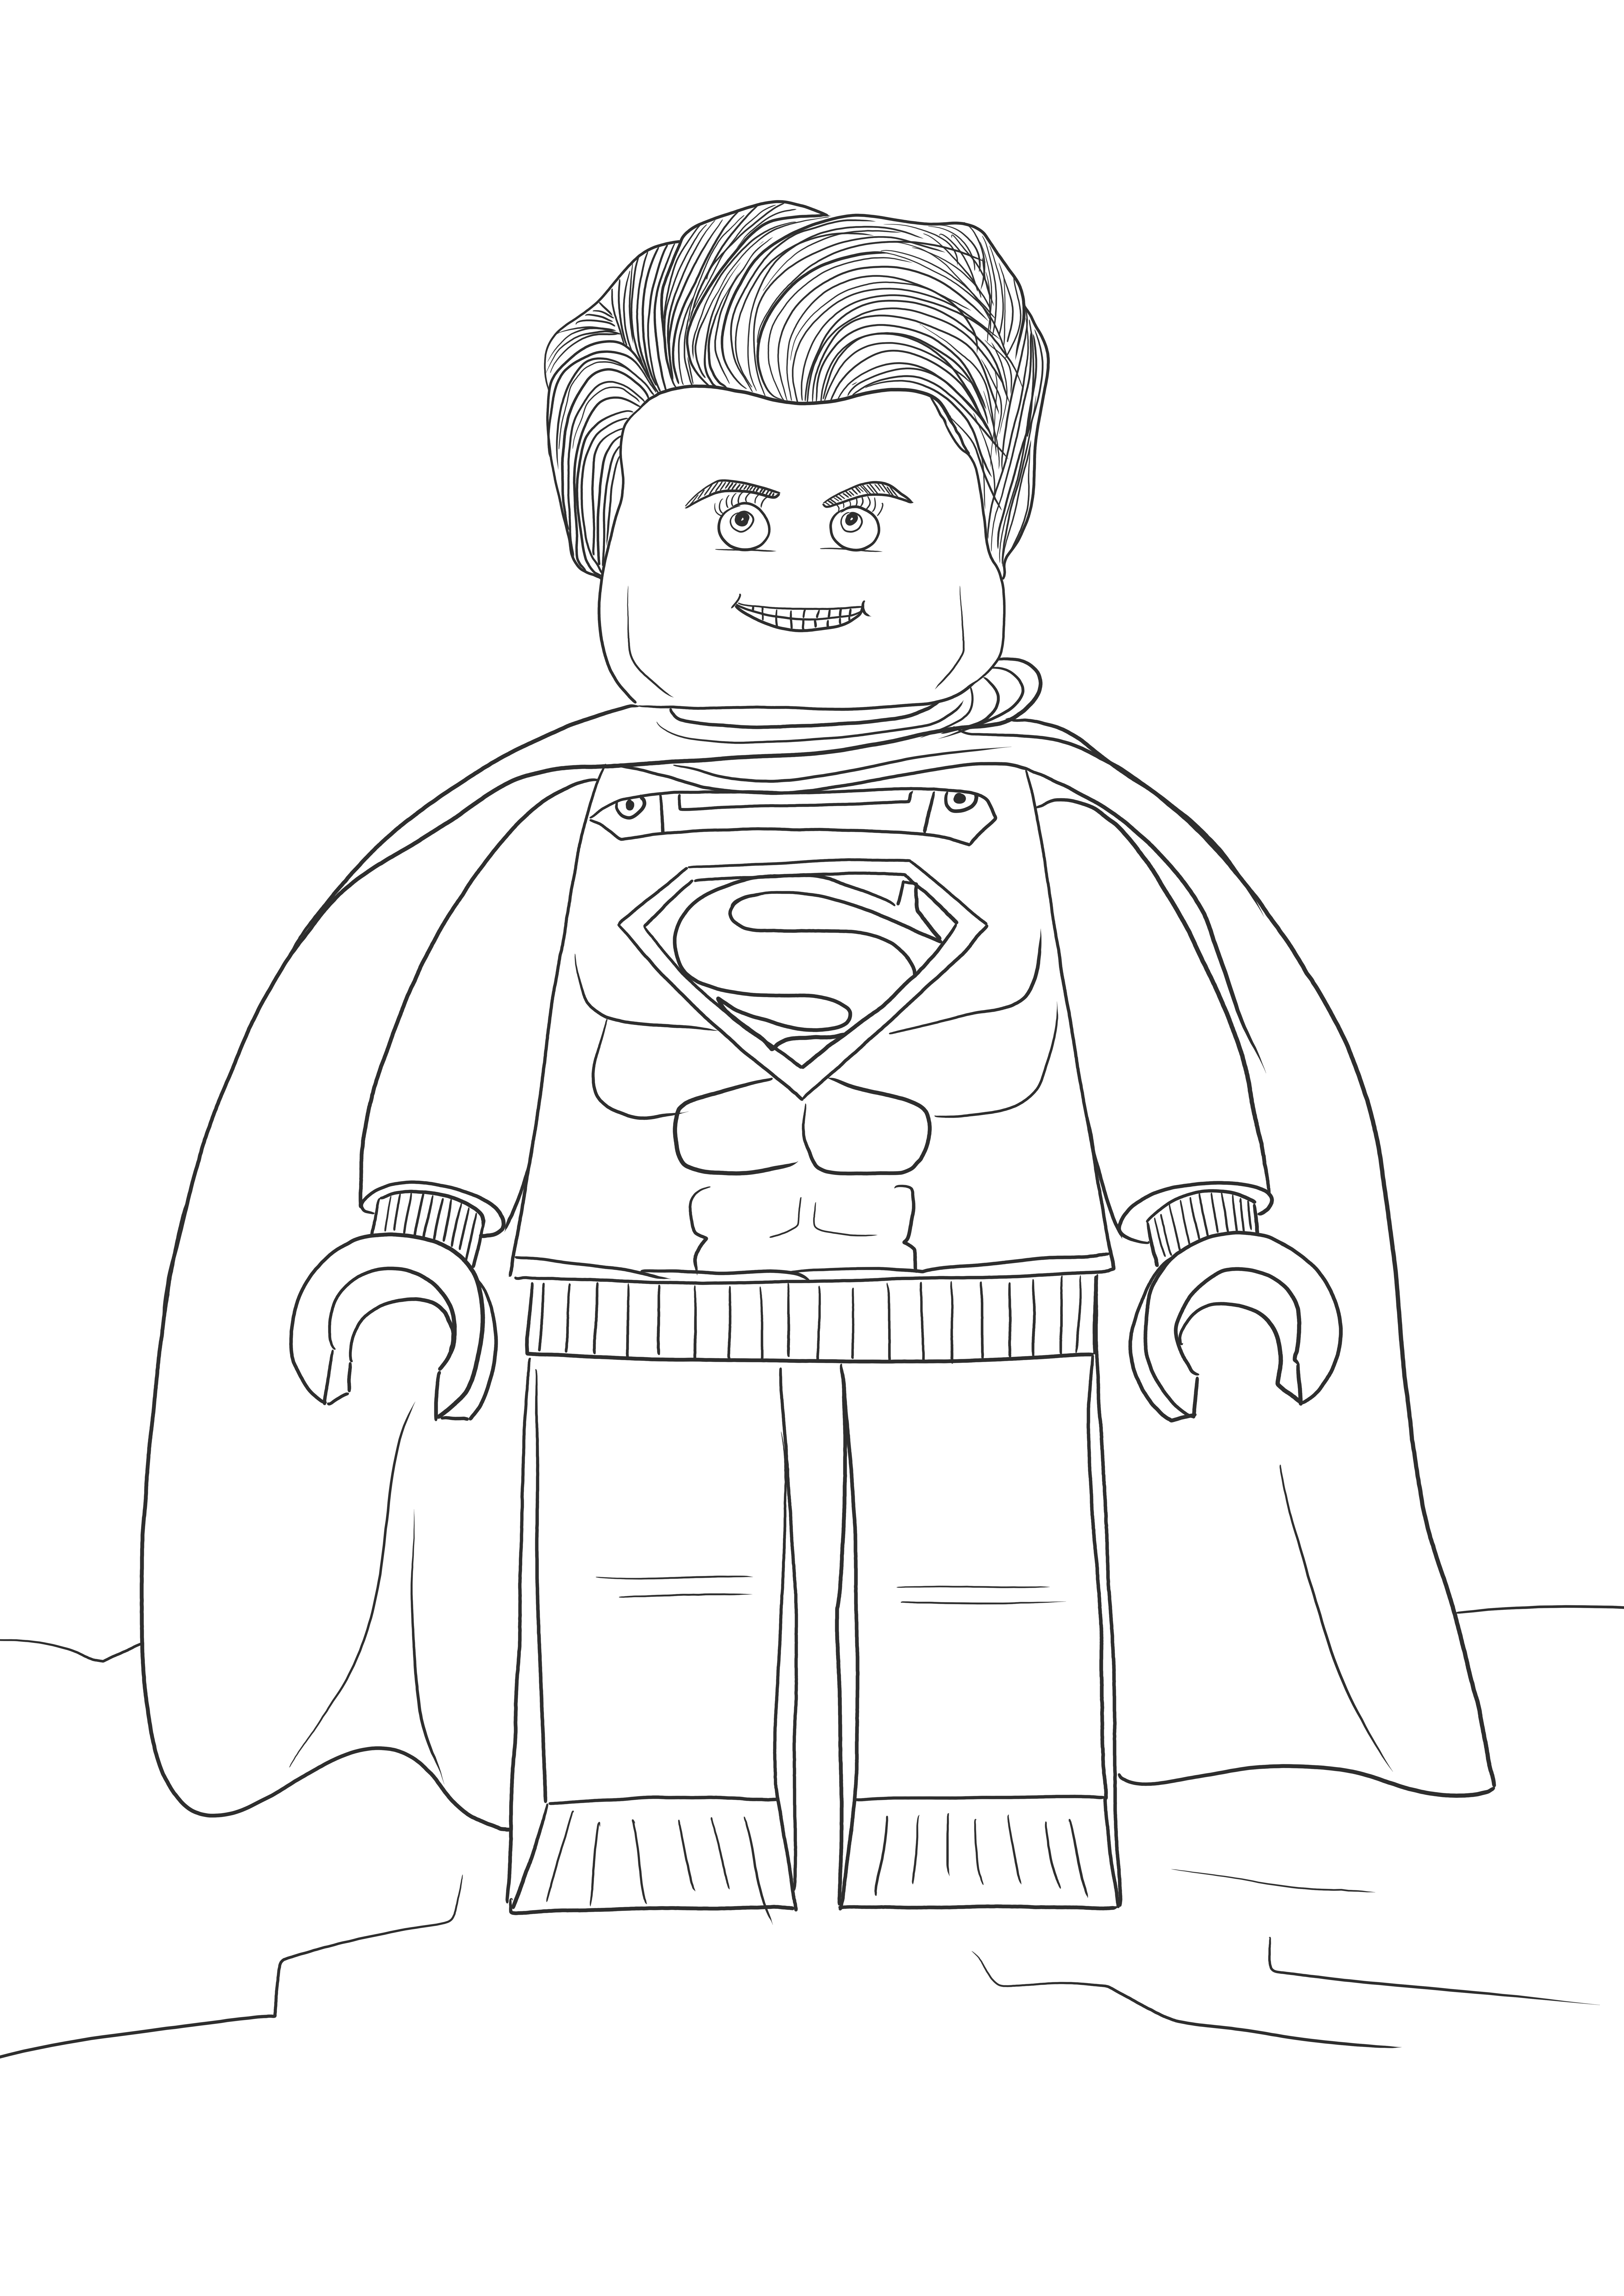 Lego Superman gratuit à imprimer ou télécharger des images pour les enfants à colorier